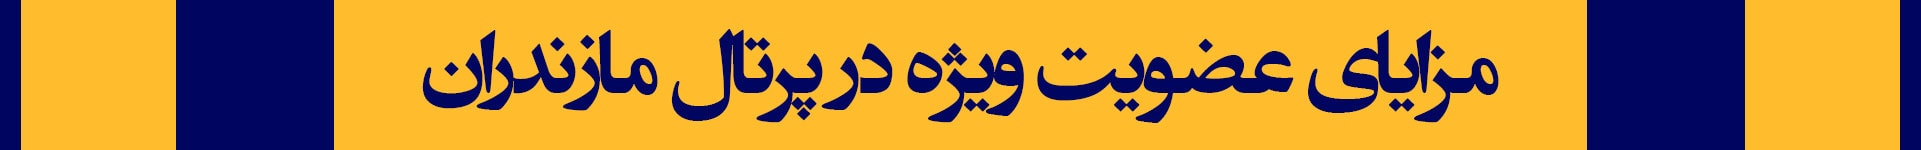 مازندران